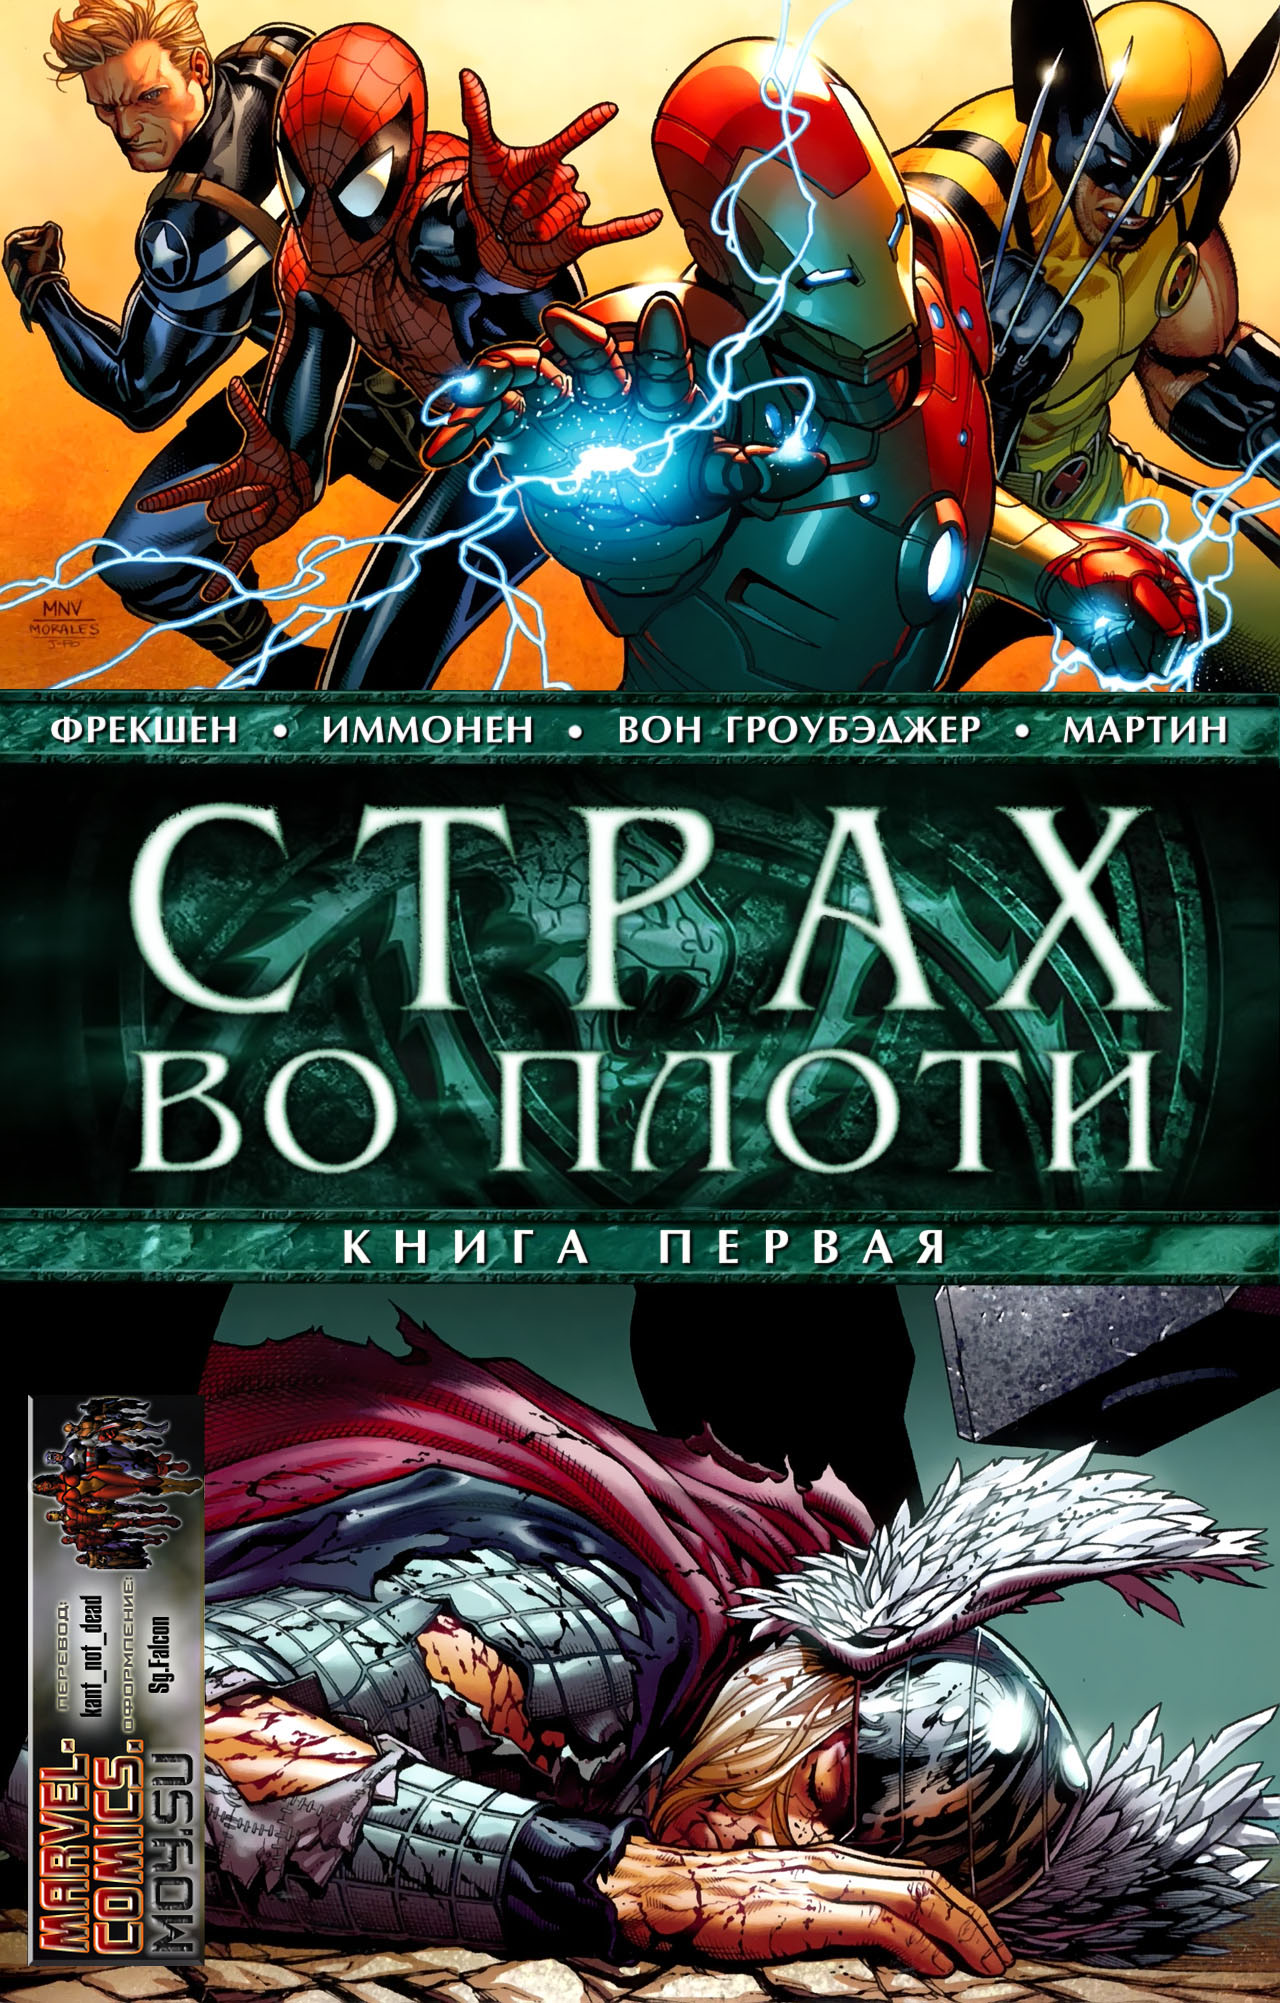 Uncanny X-Men 001 - 544 Annuals Download - Torrentz